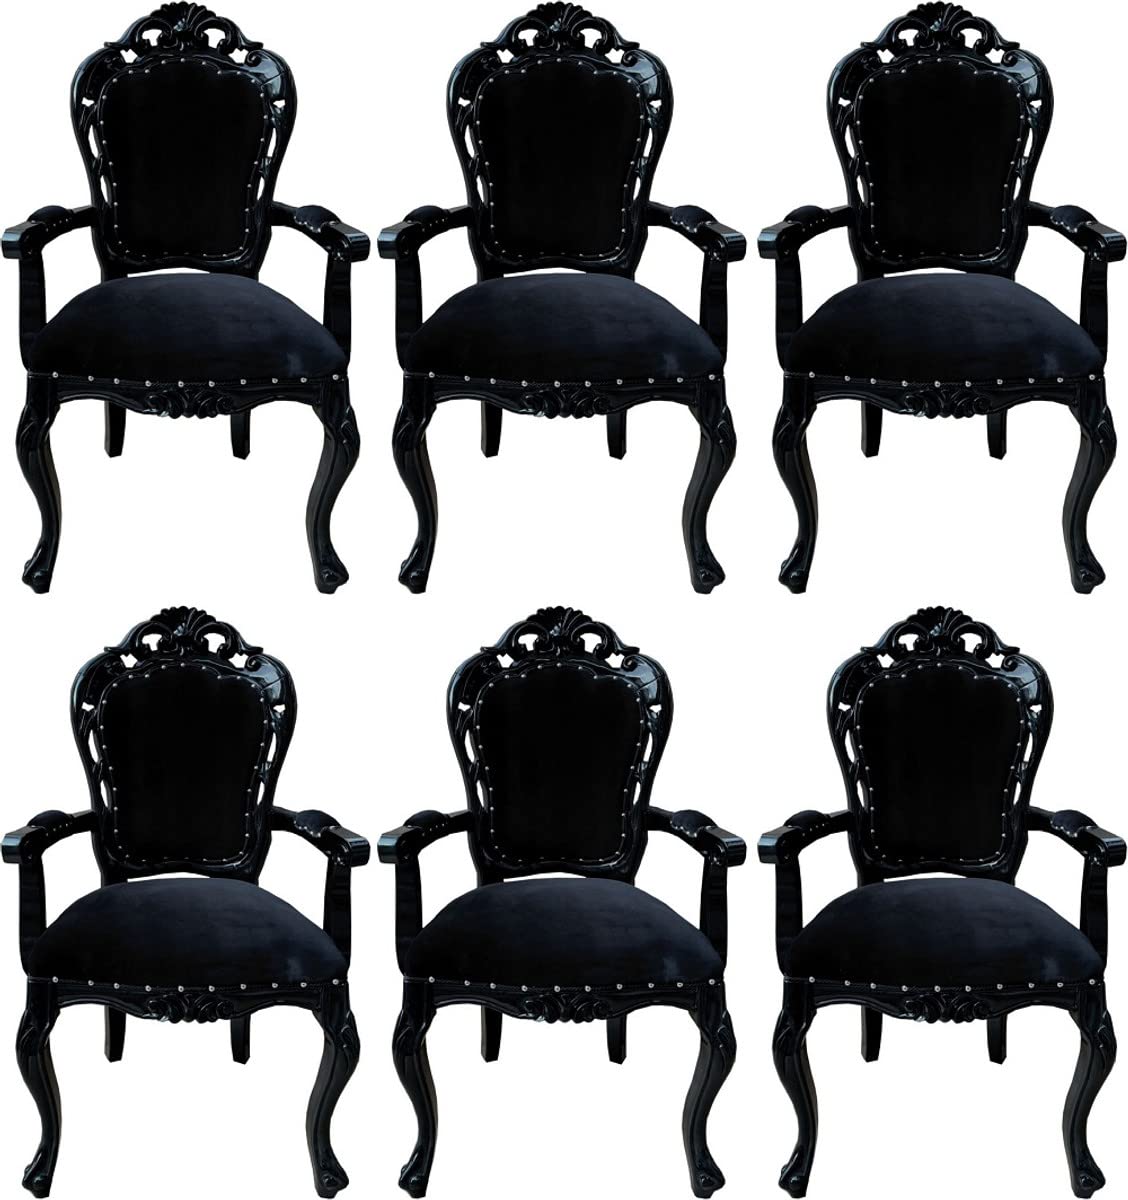 Casa Padrino Barock Esszimmerstuhl 6er Set Schwarz - Handgefertigte Antik Stil Stühle mit Armlehnen - Barock Esszimmer Möbel